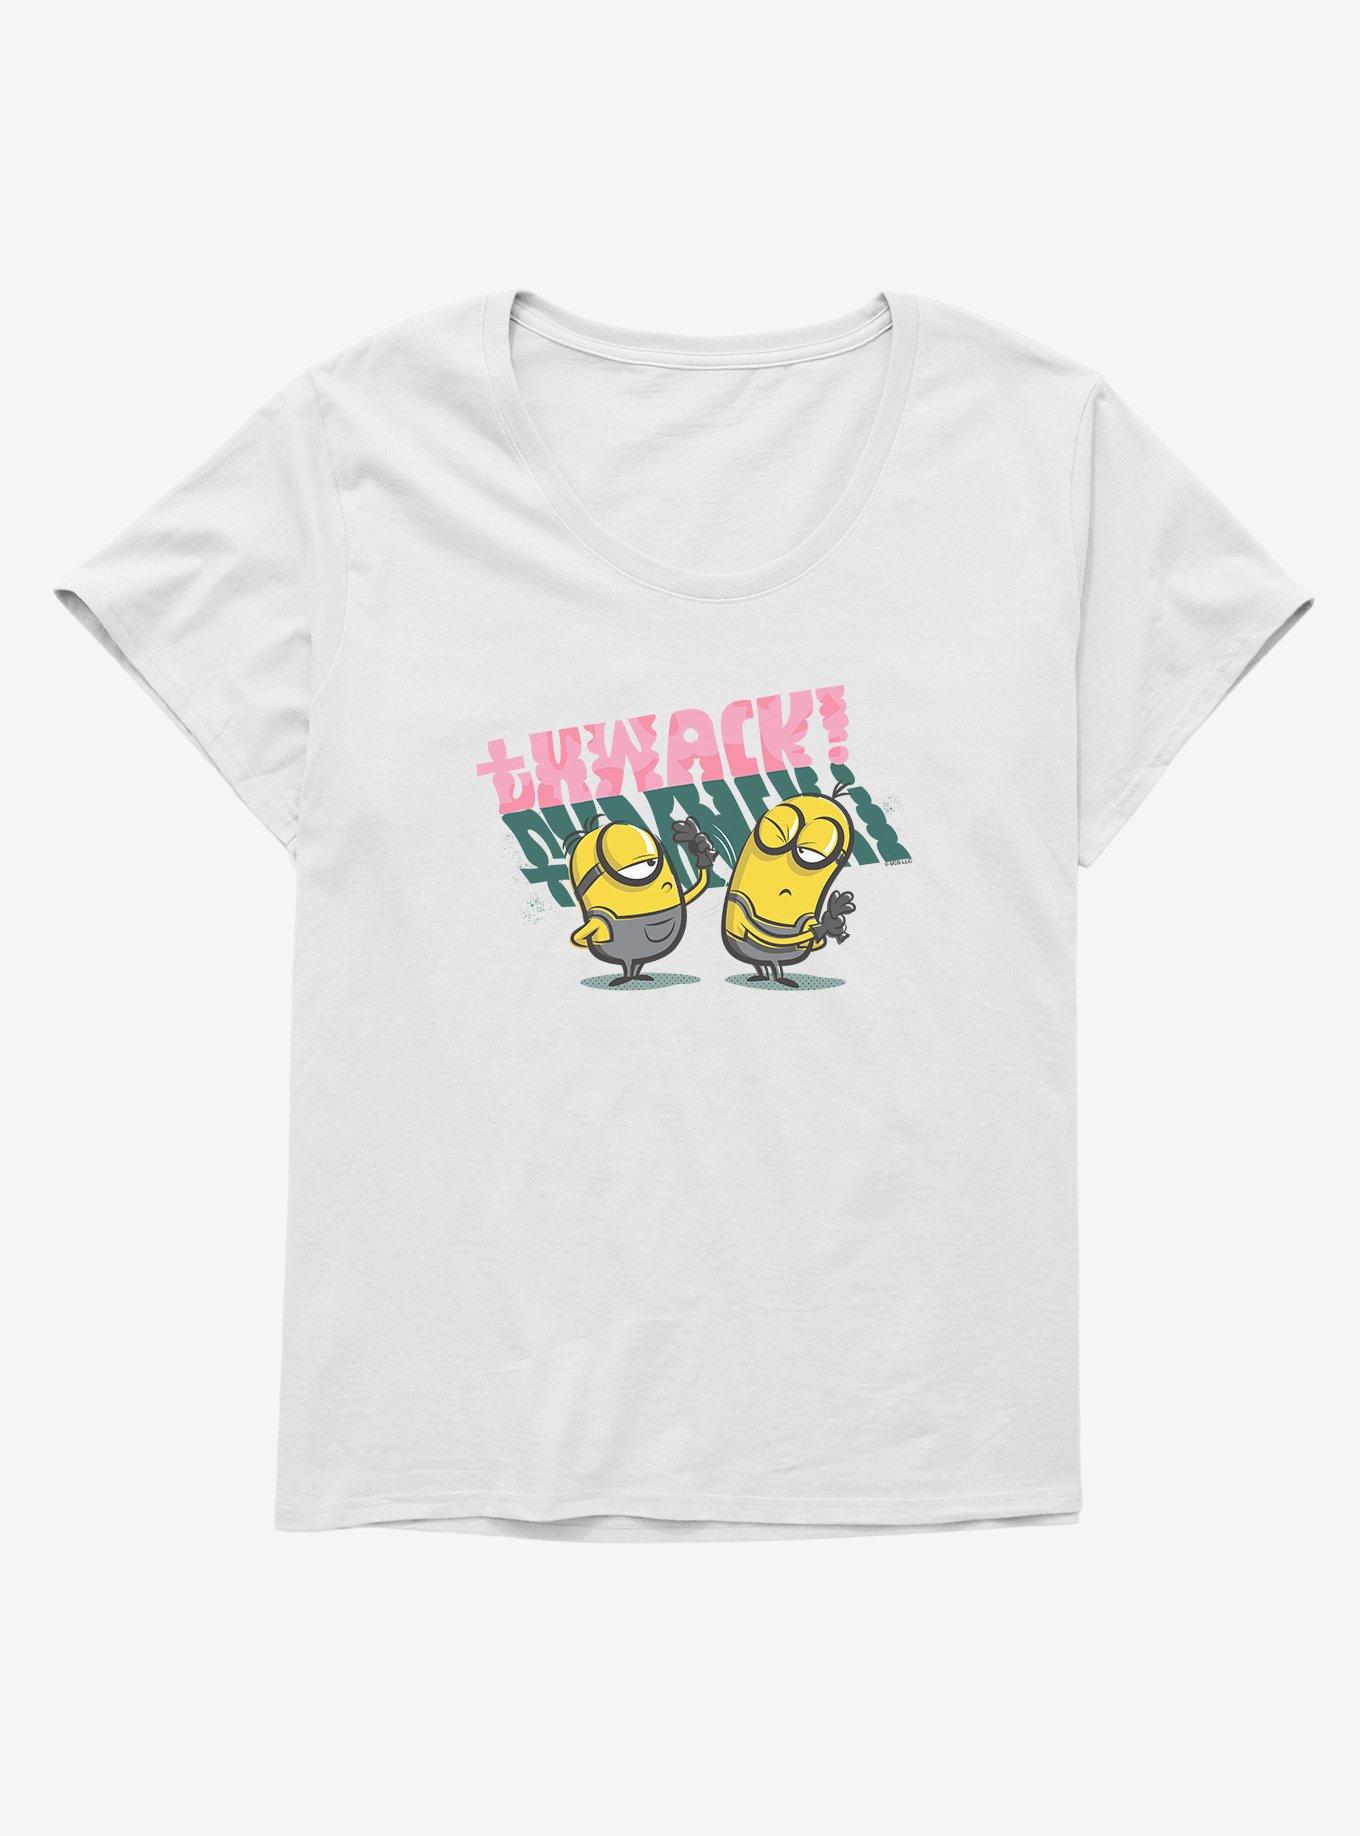 Minions Stuart Thwacks Kevin Girls T-Shirt Plus